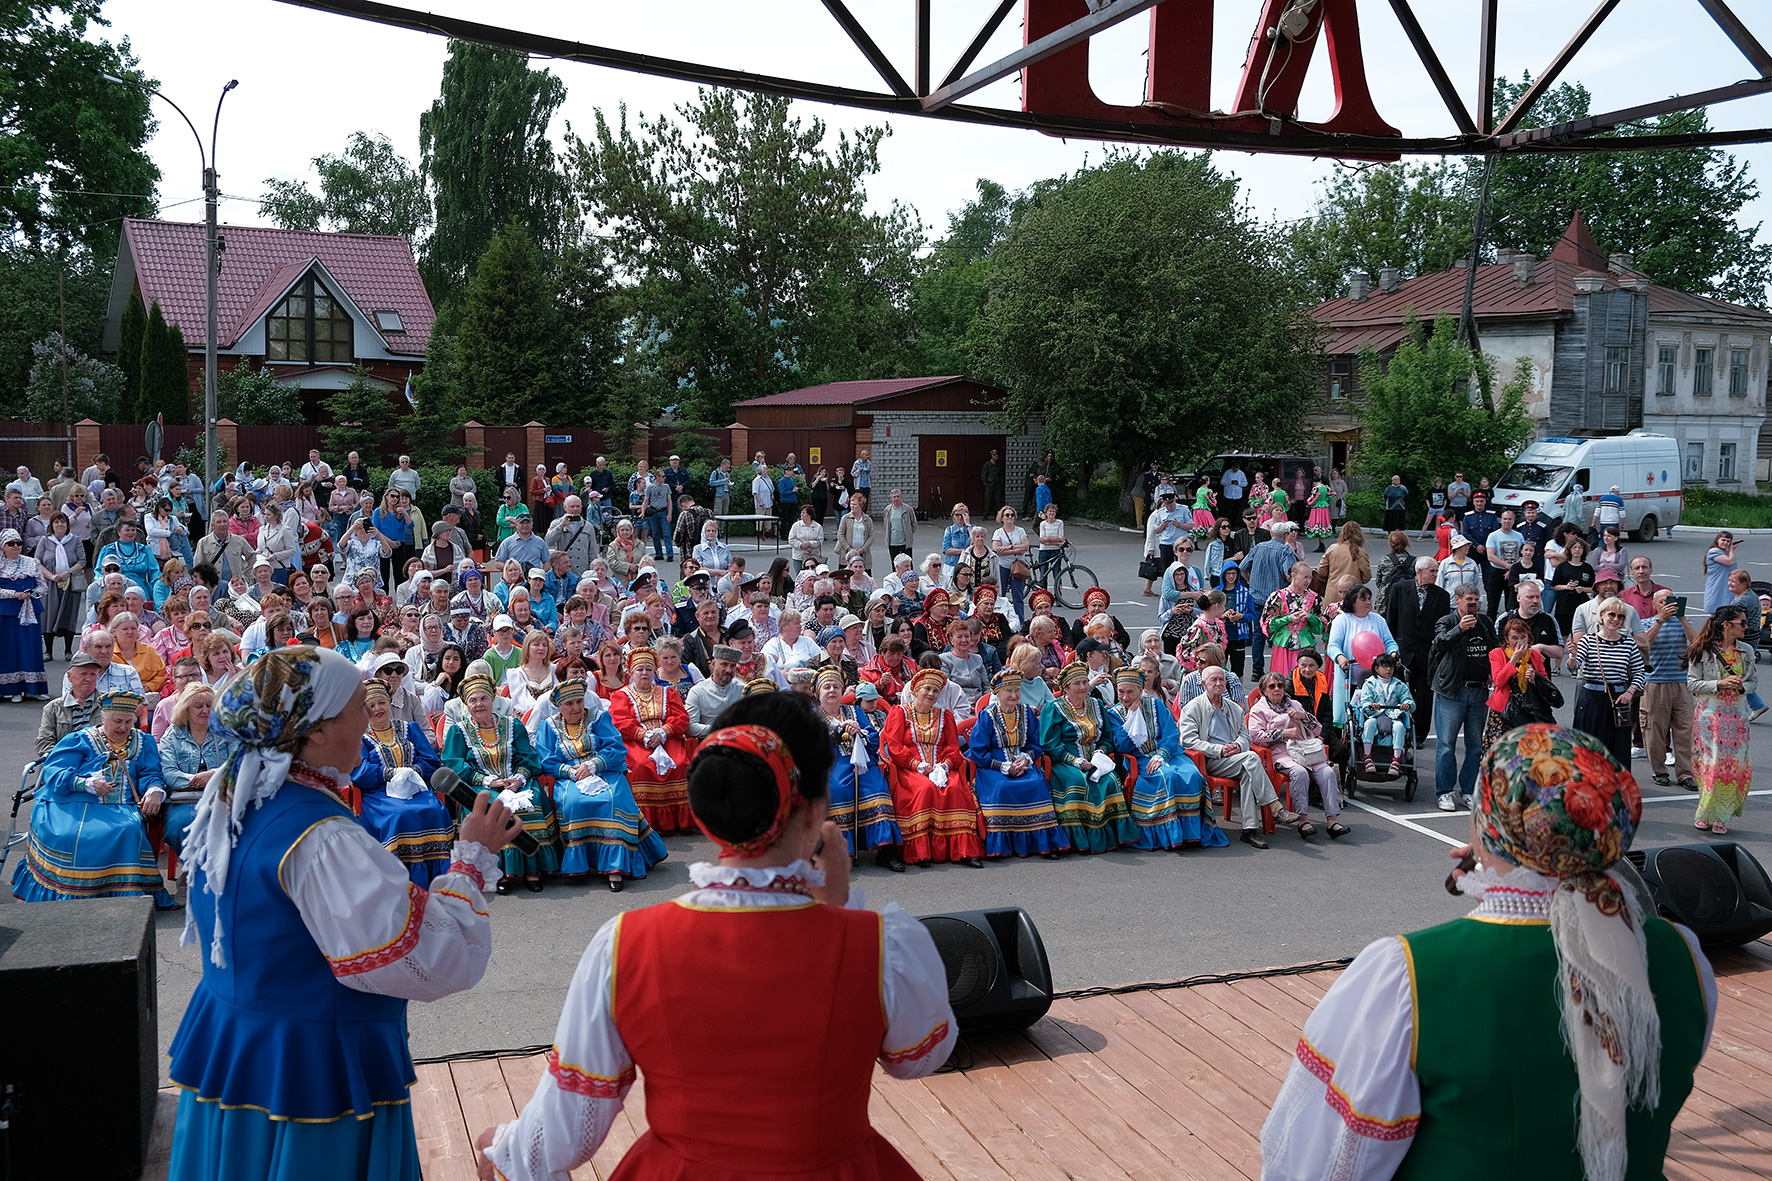 V областной открытый фестиваль казачьей культуры